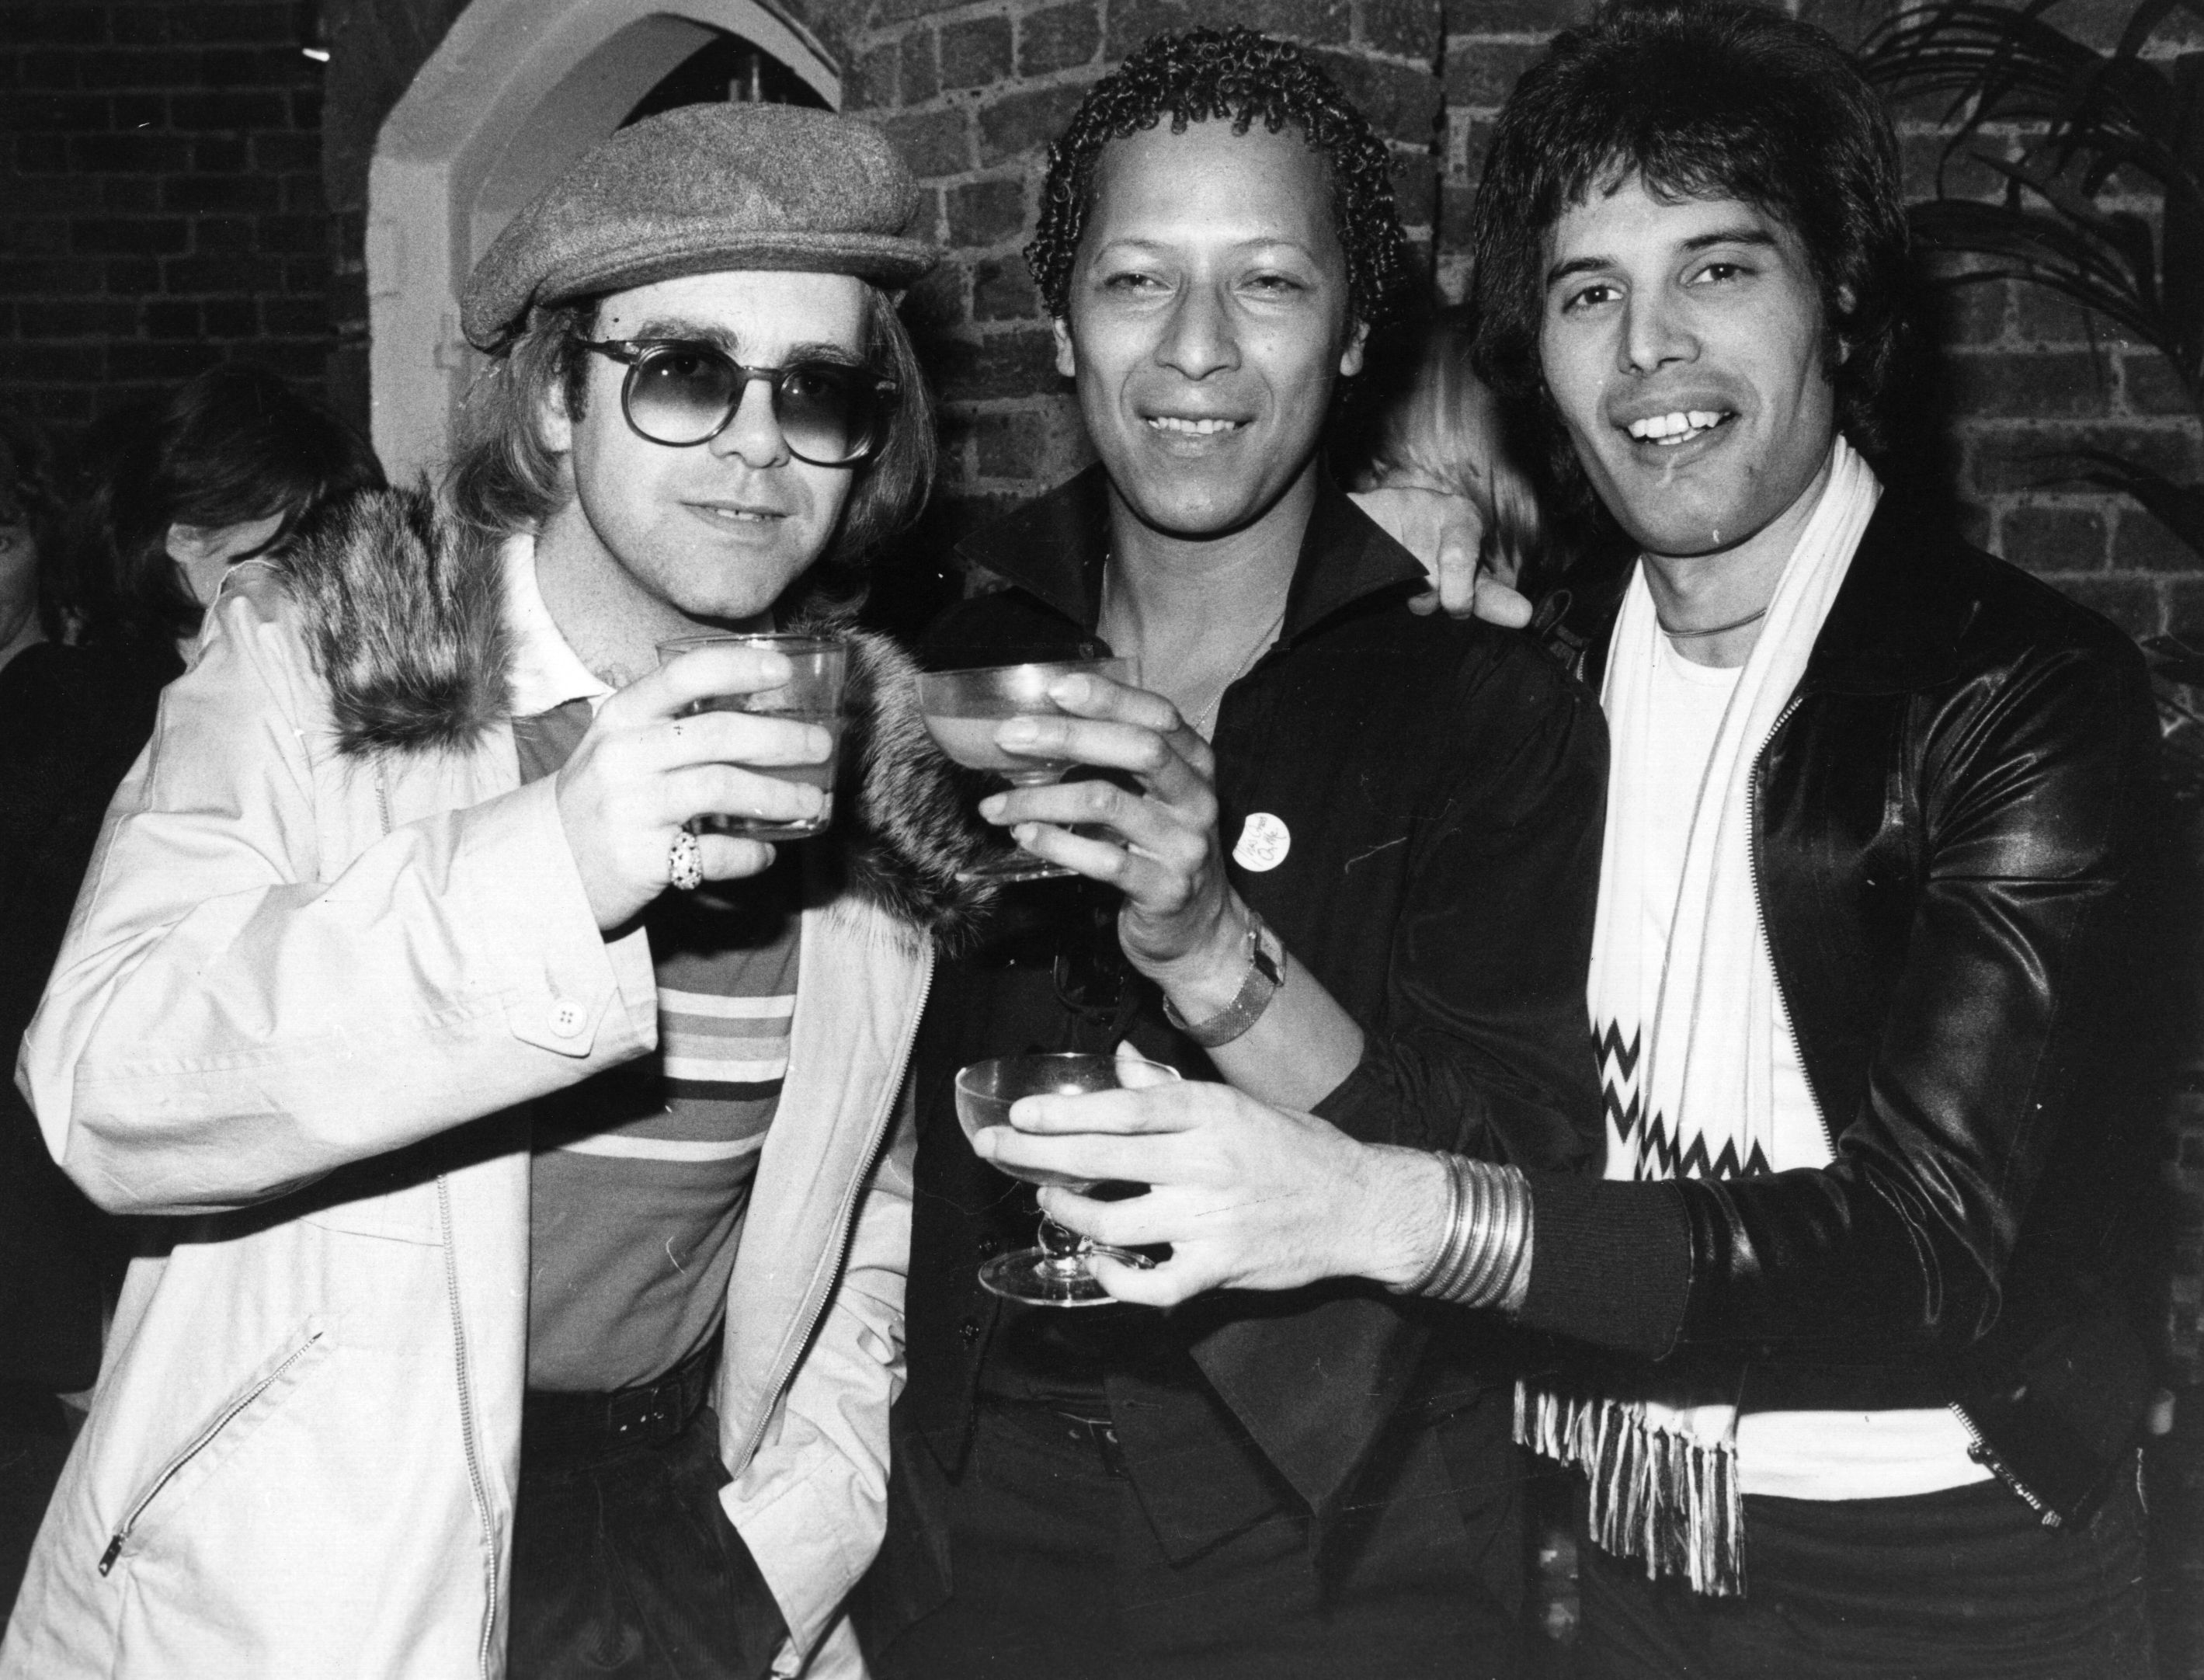 Elton John, Peter Straker, and Freddie Mercury holding glasses